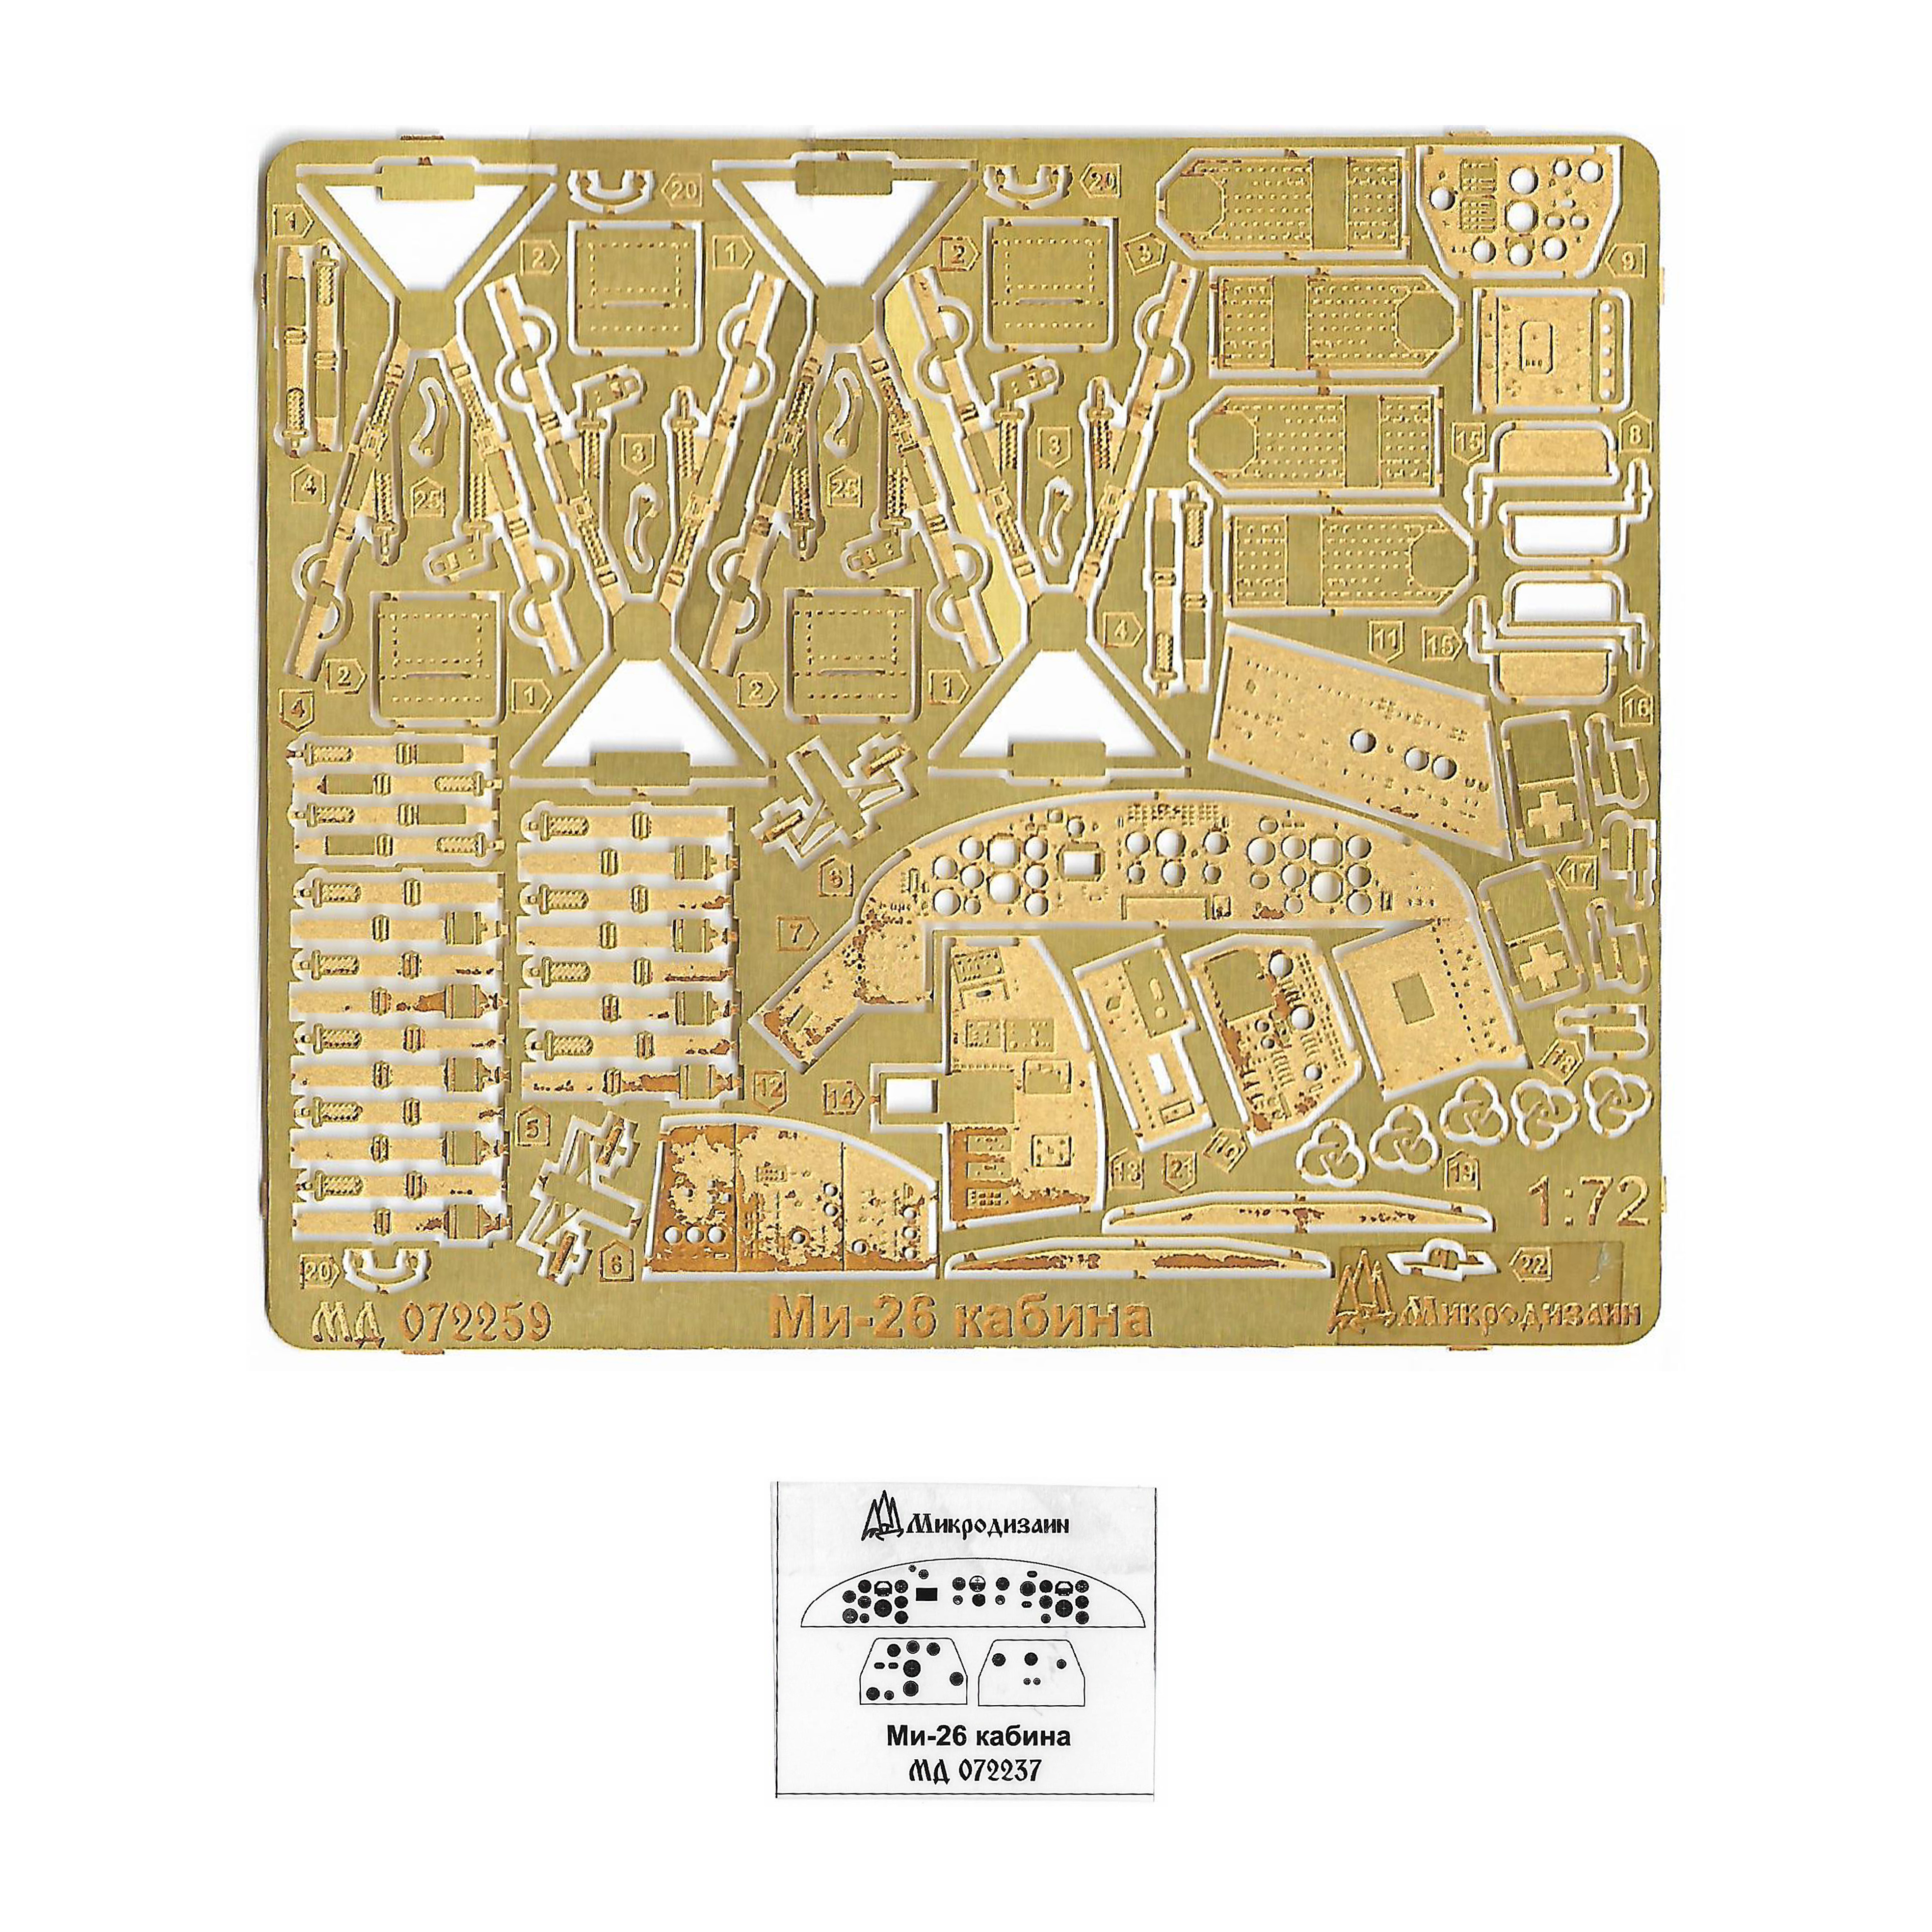 072259 Microdesign 1/72 photo etching Kit cabin (Zvezda)